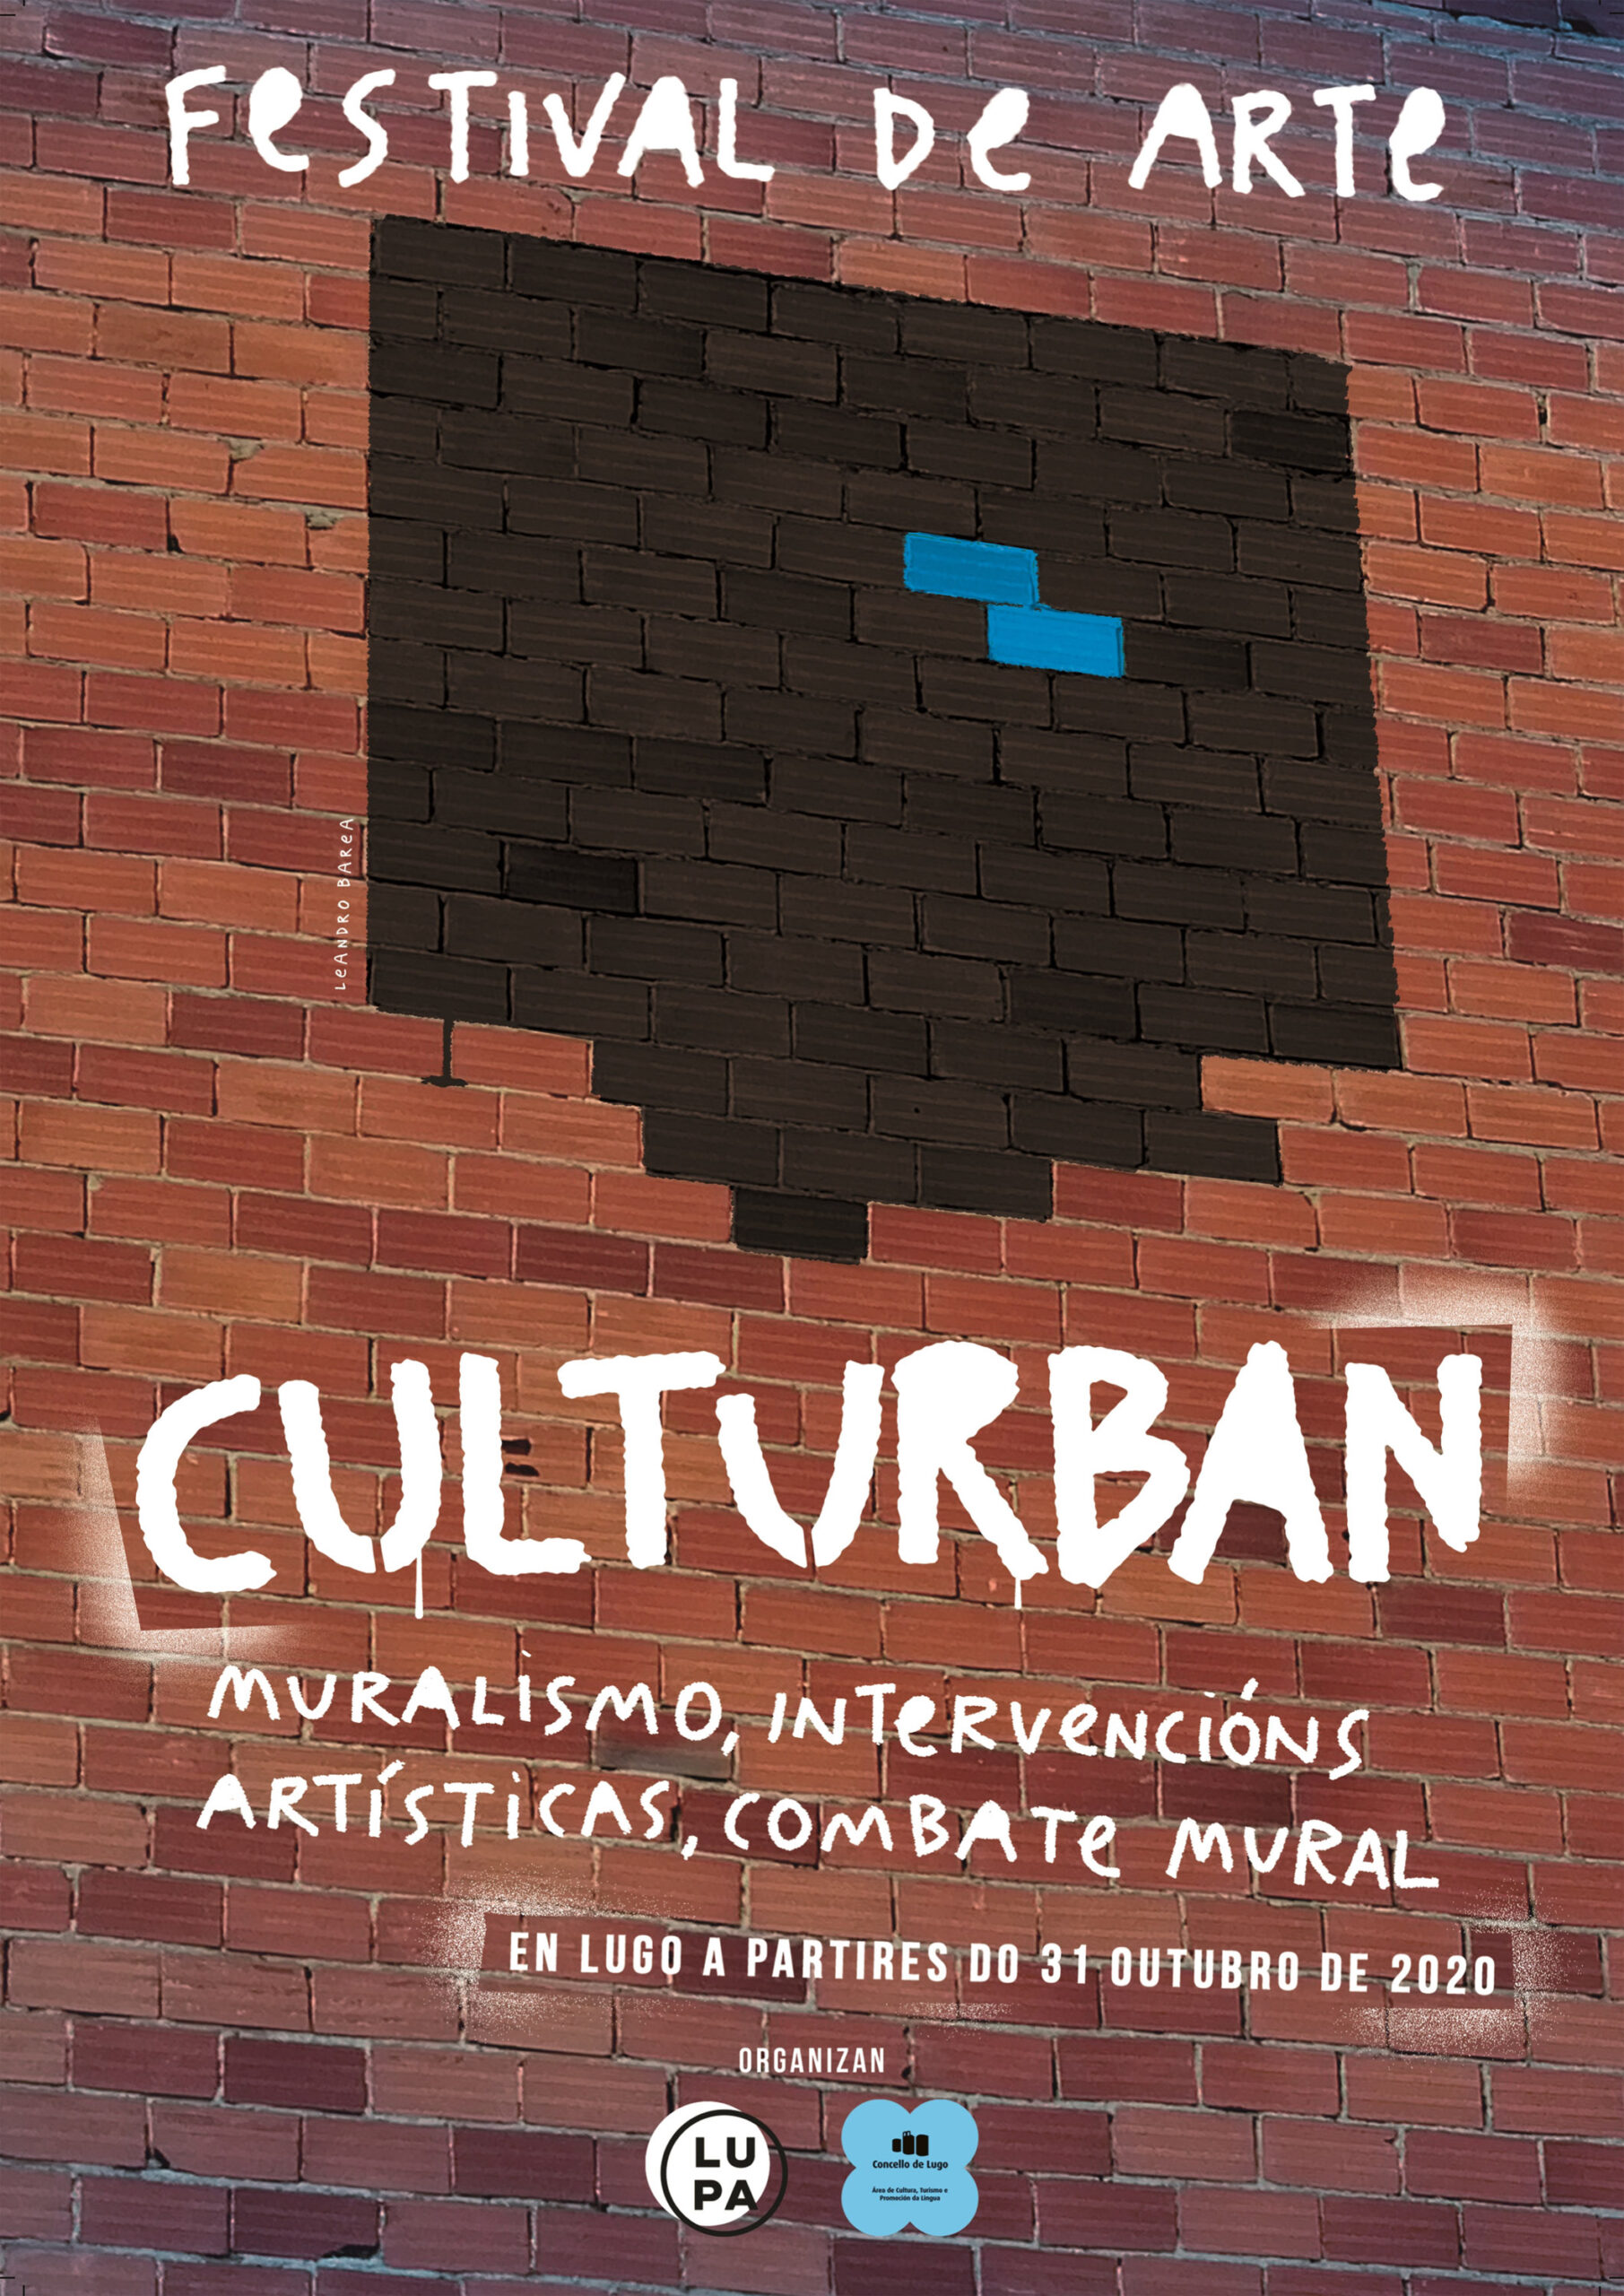 Novo festival de arte en Lugo: Culturbán